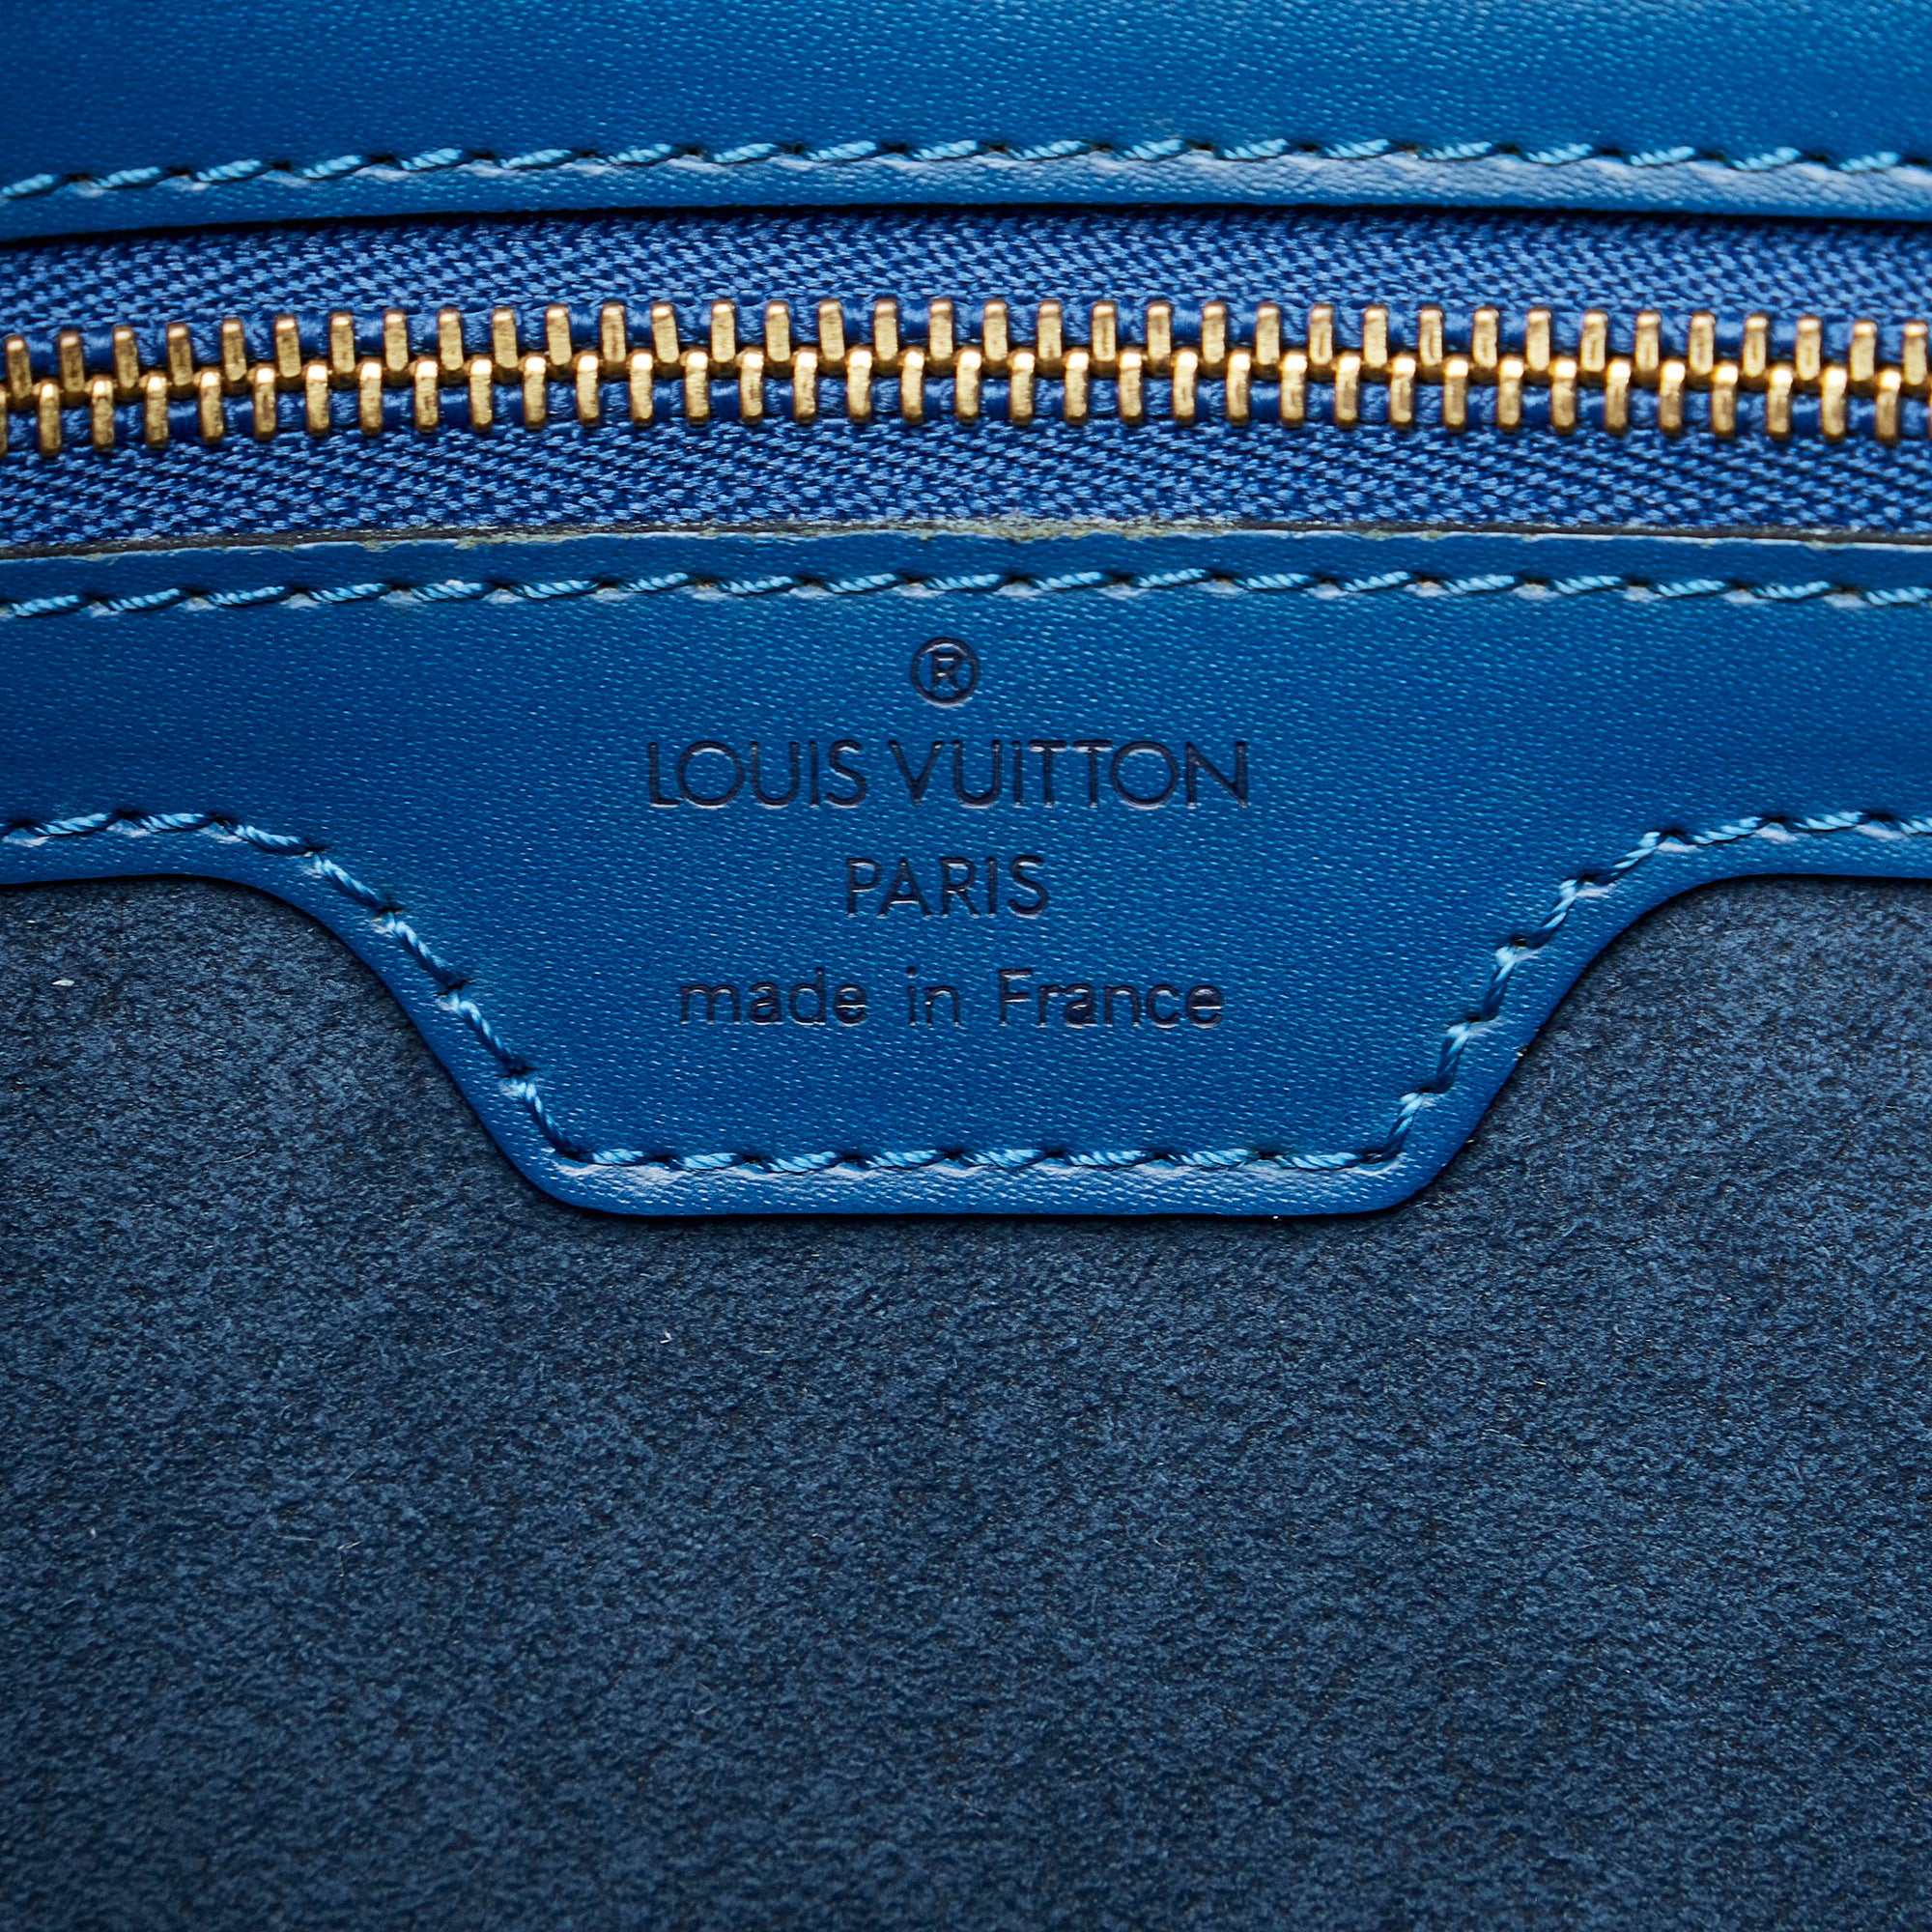 Louis Vuitton Lussac Tote in Epi Leather Luxury Designer Bag